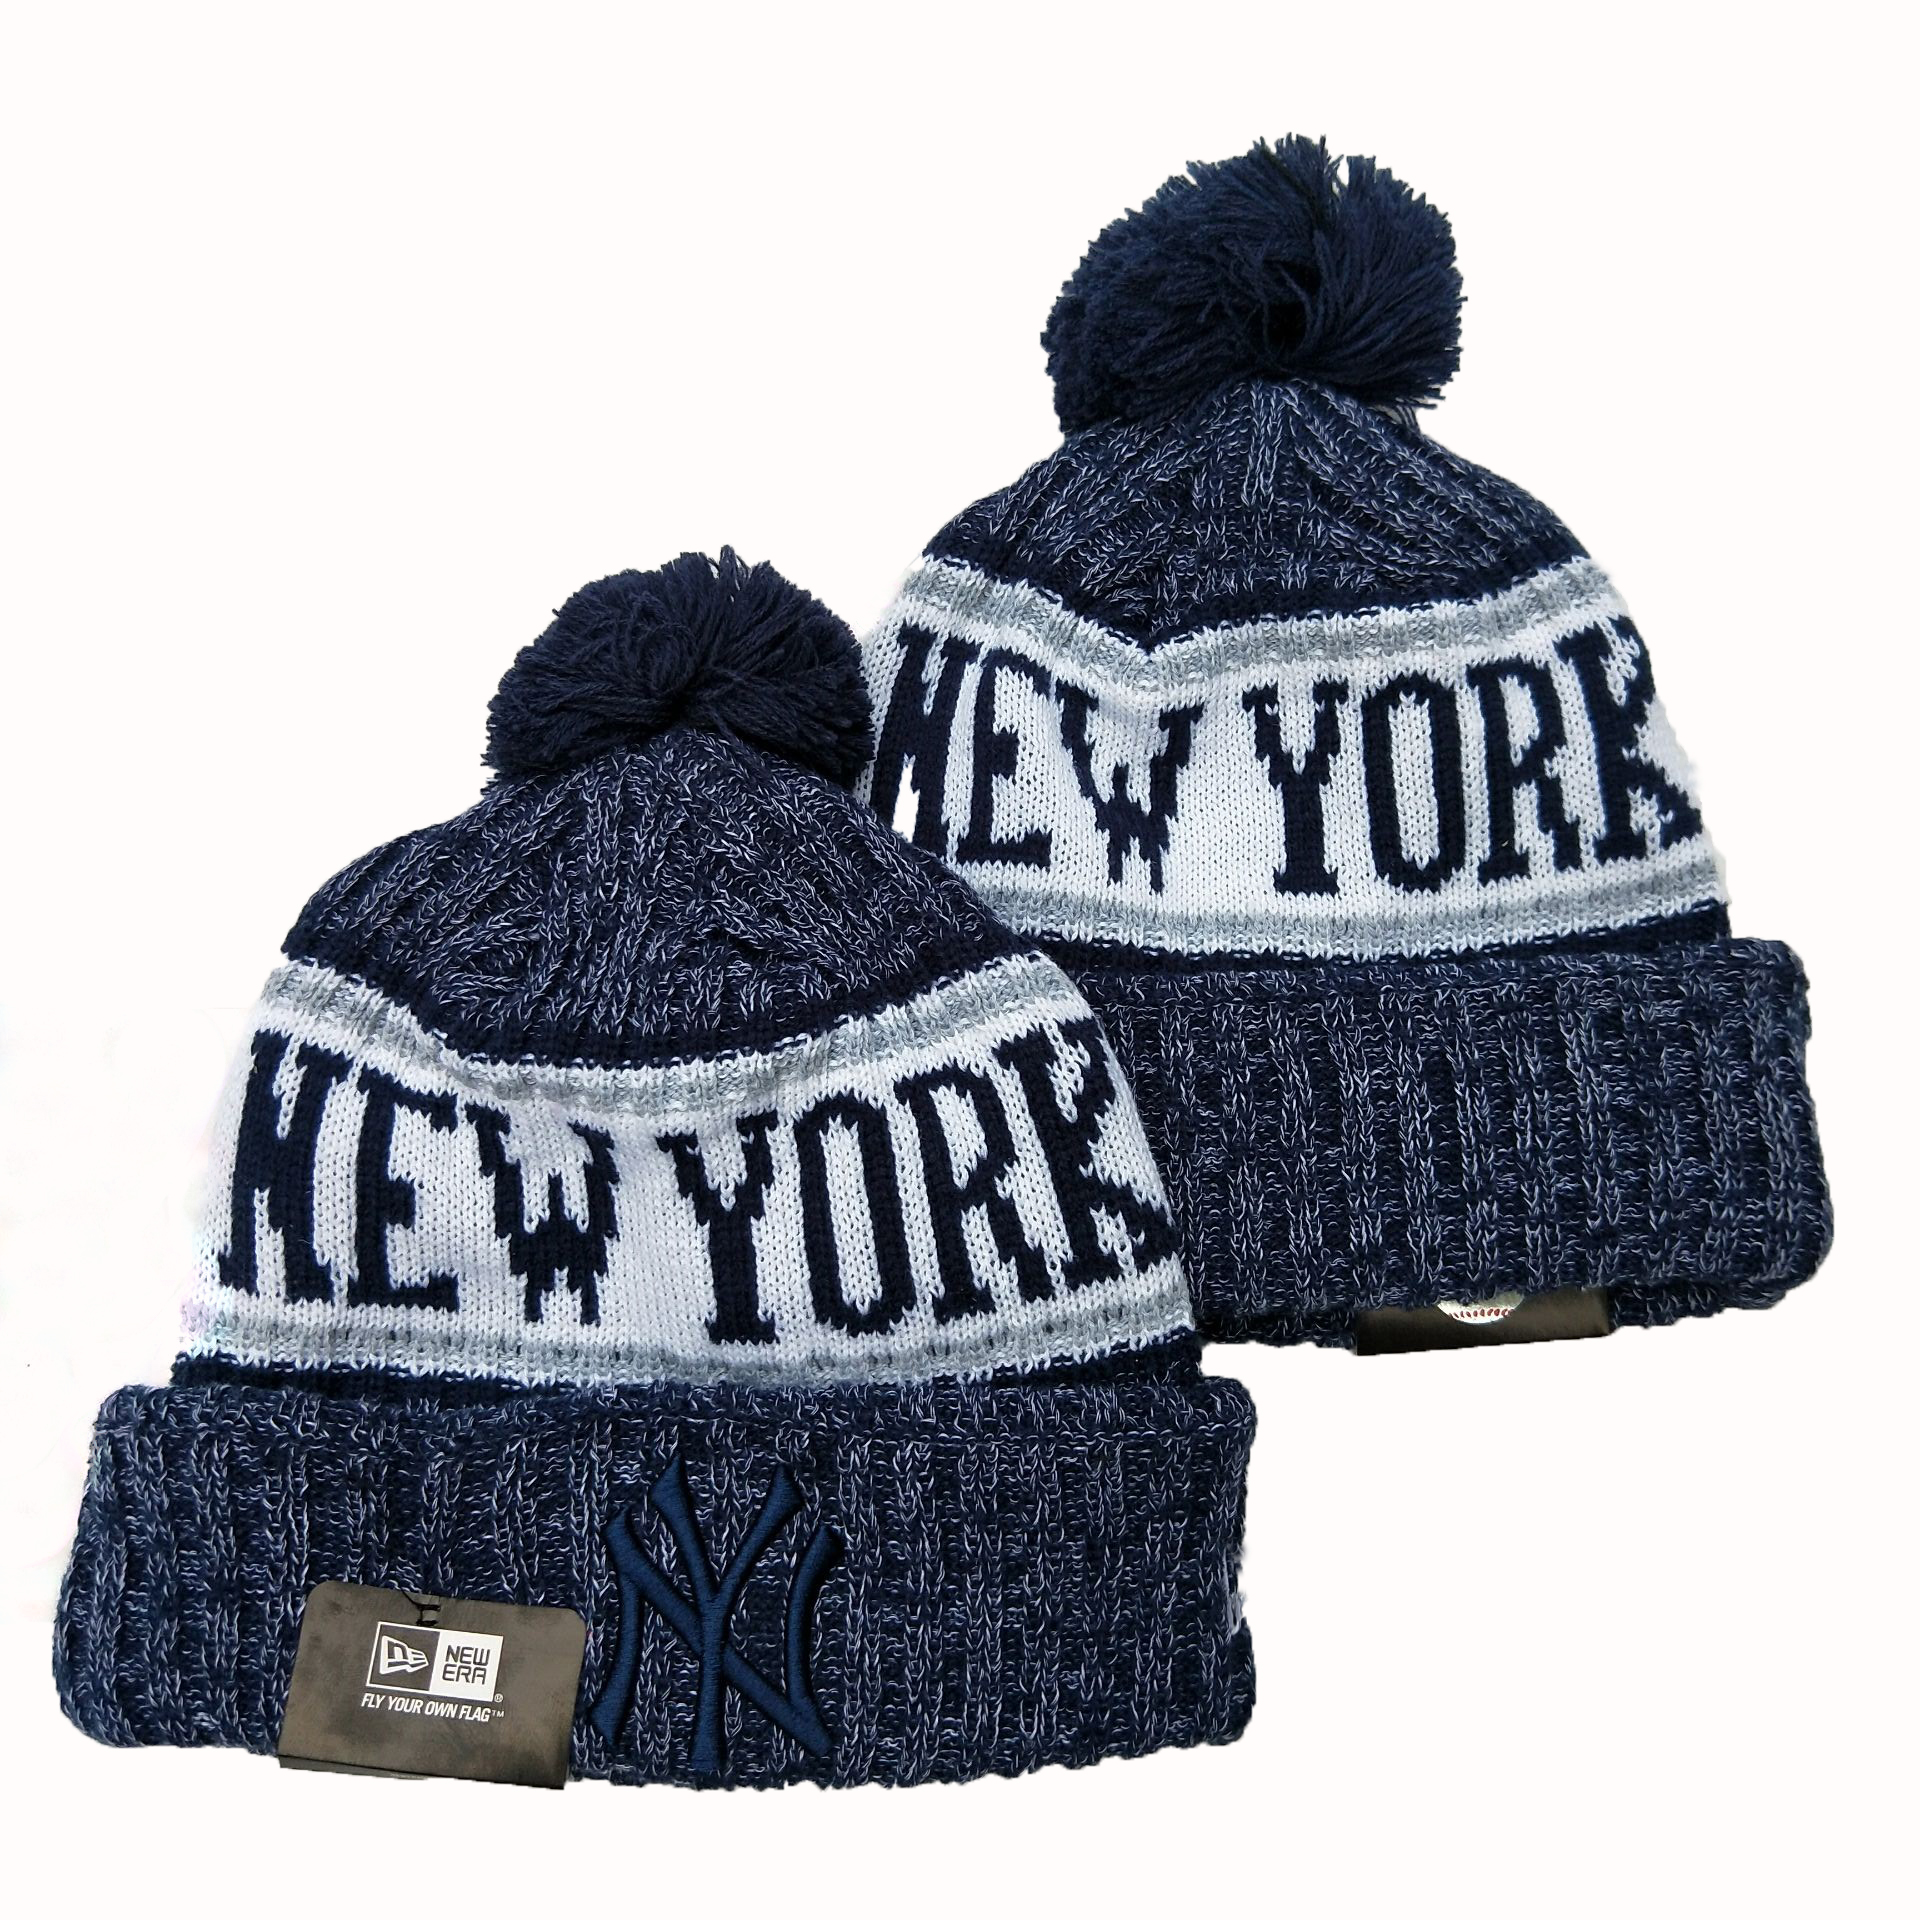 New York Yankees Team Logo Navy Cuffed Pom Knit Hat YD